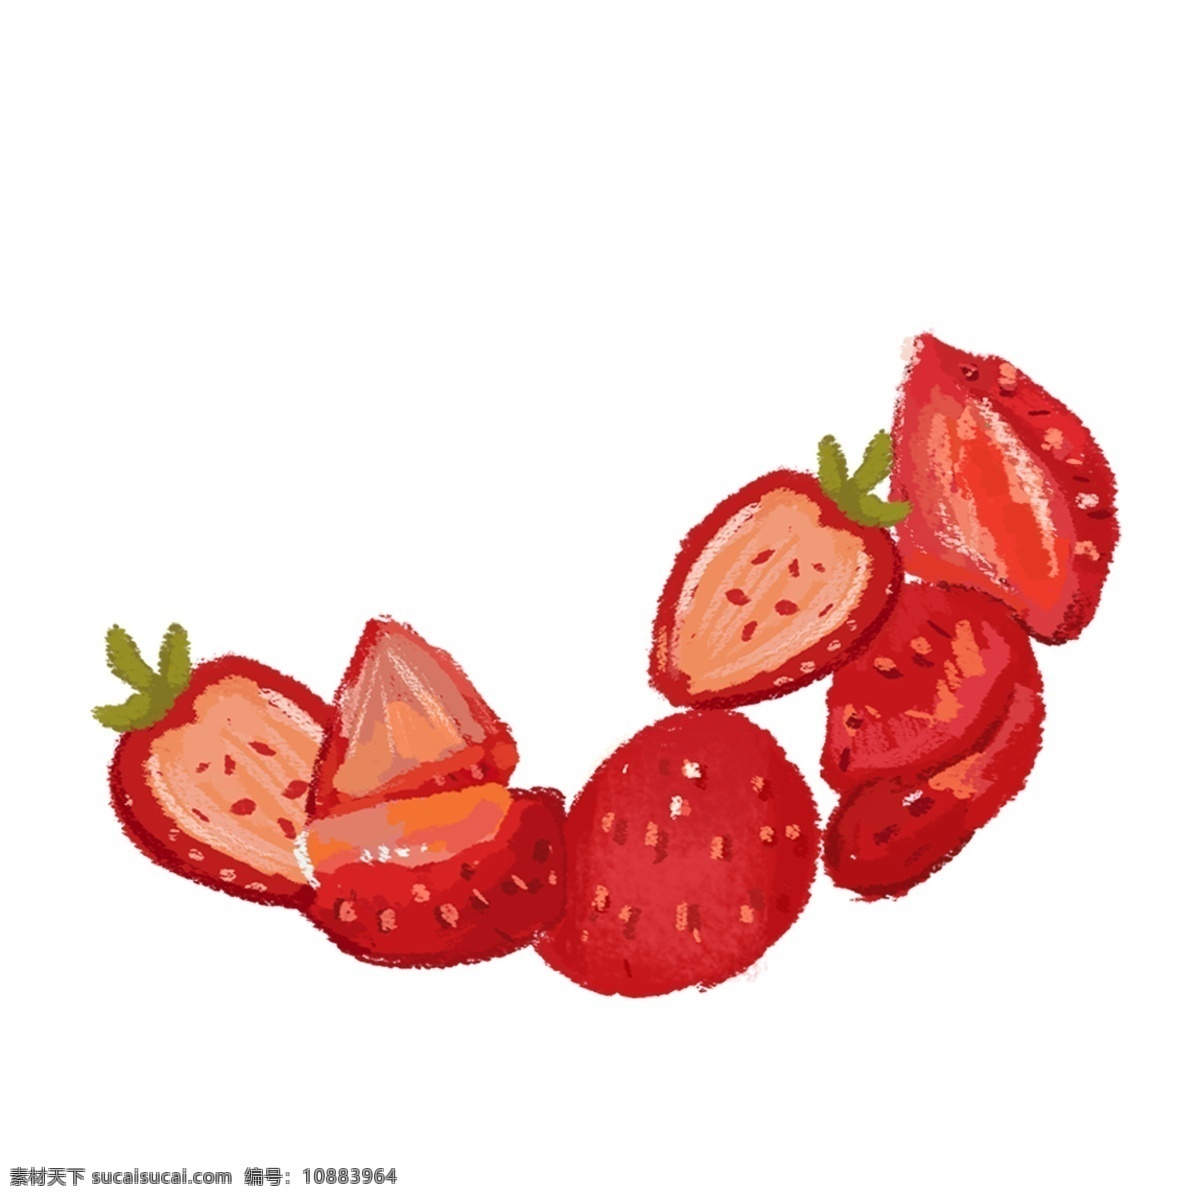 草莓 卡通 切开的草莓 红色草莓 草莓水果 水彩草莓 卡通红色草莓 手绘草莓 水果